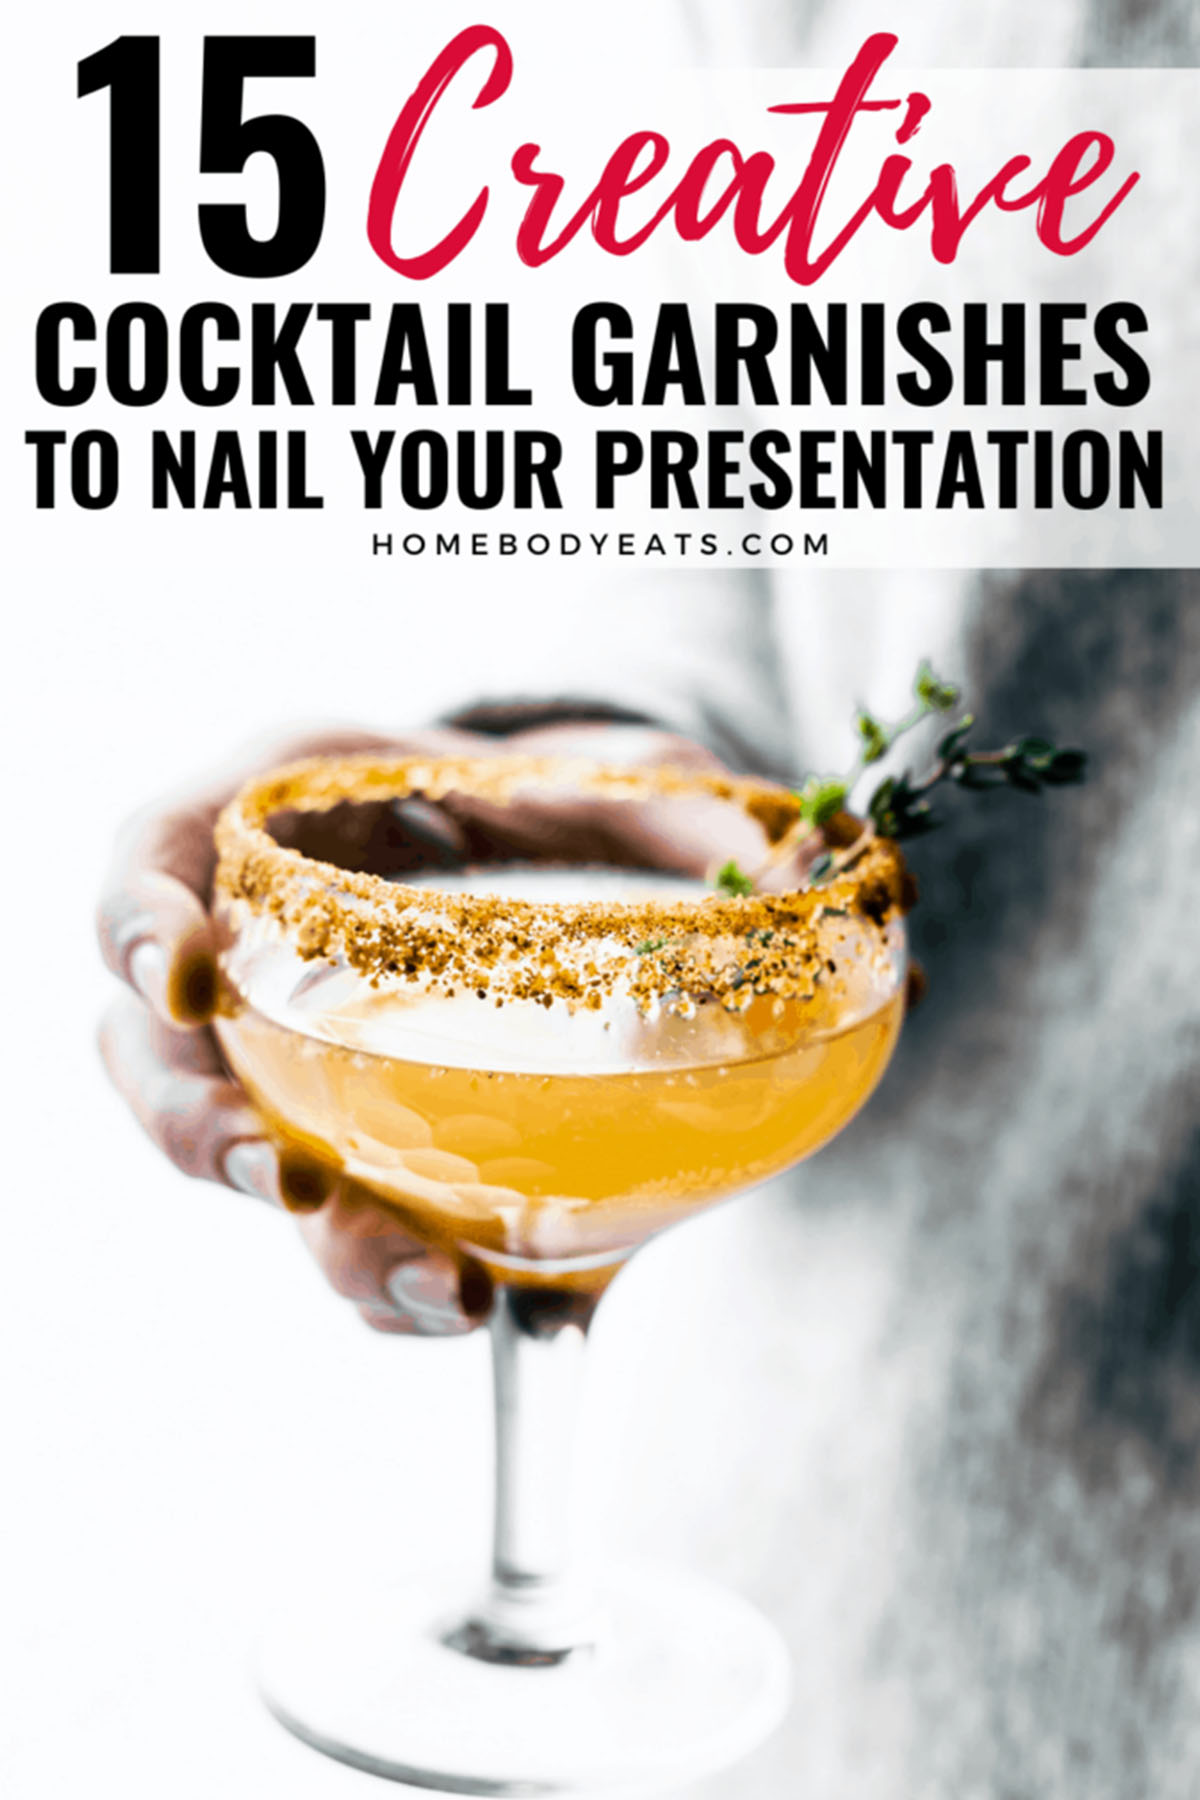 15 creative cocktail garnish ideas